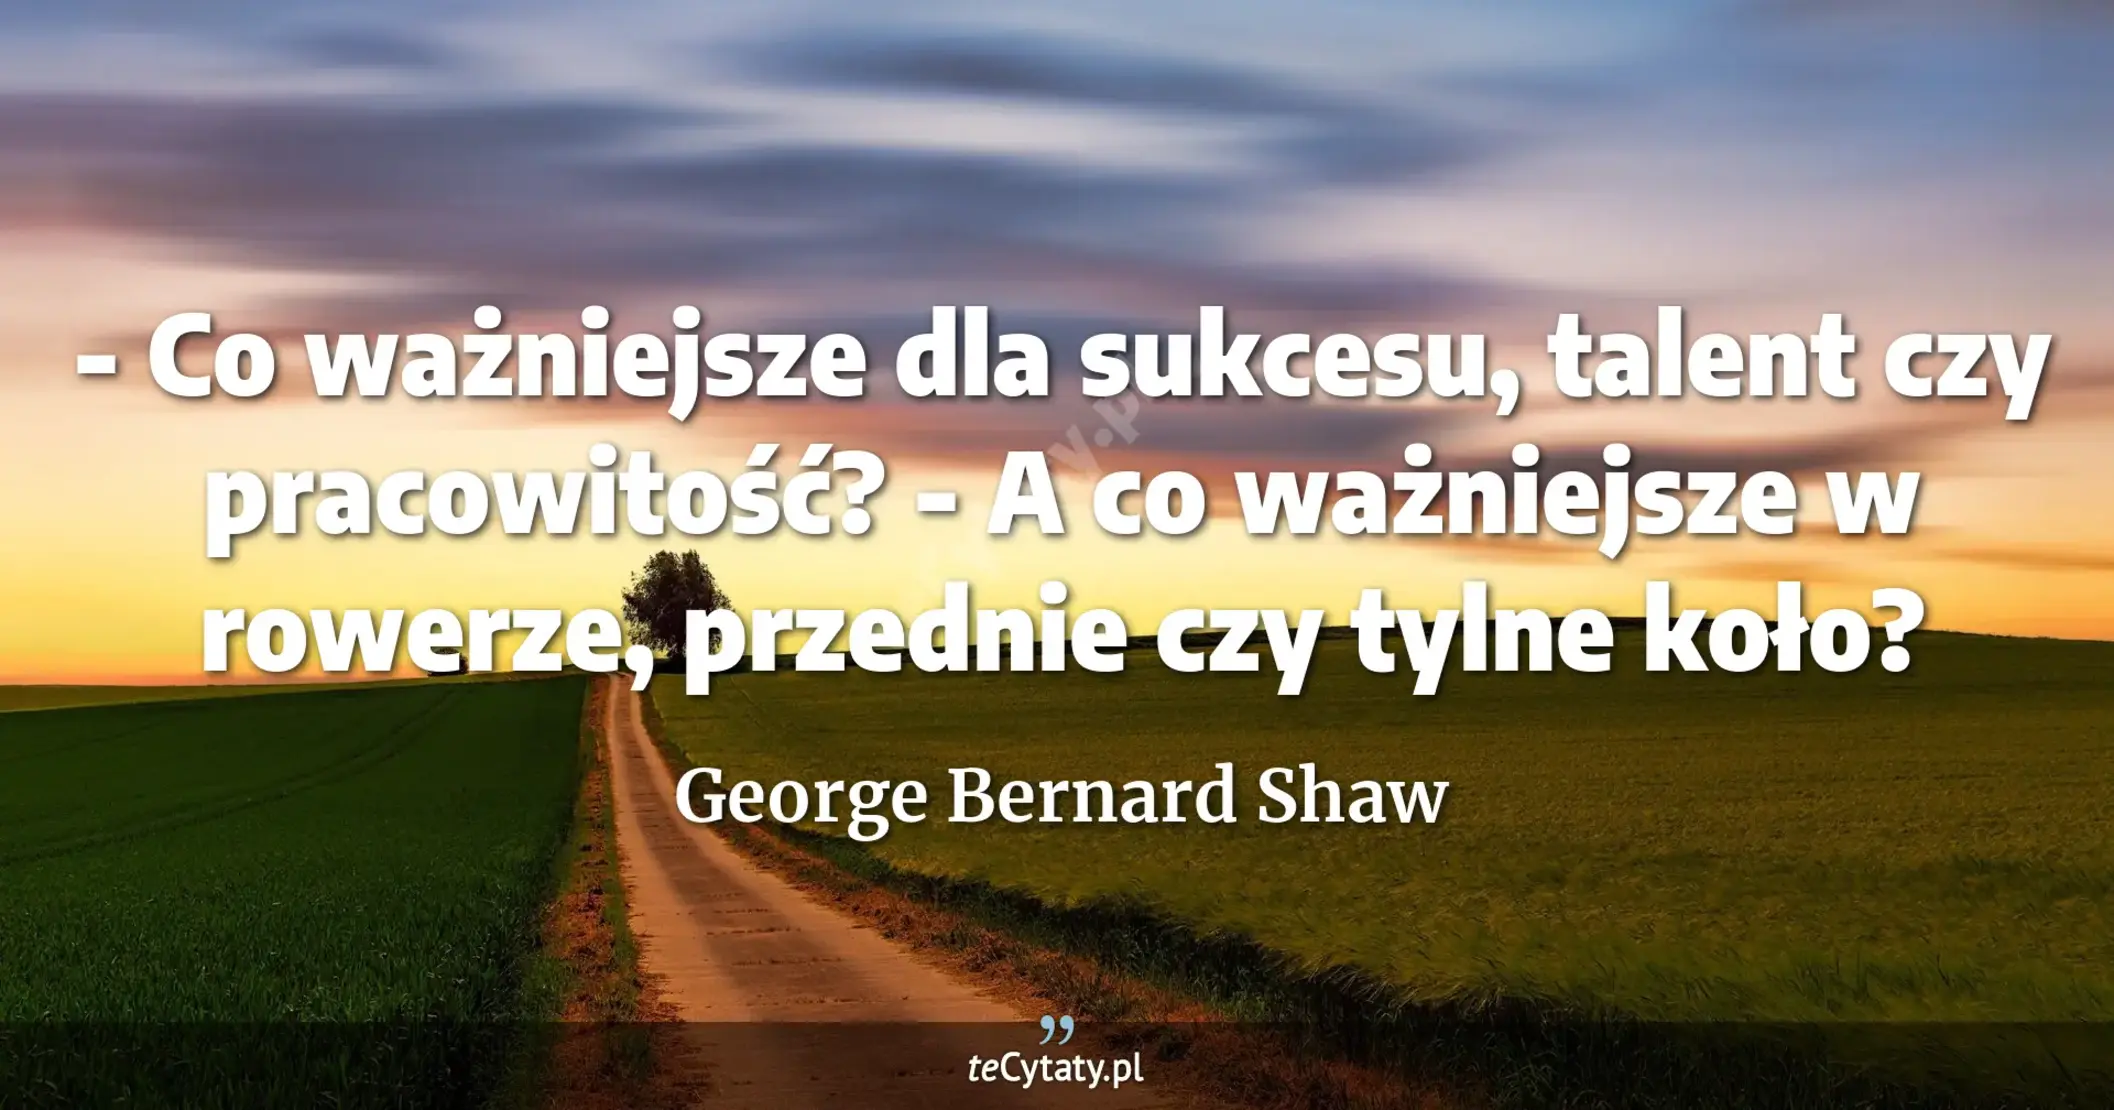 - Co ważniejsze dla sukcesu, talent czy pracowitość? <br> - A co ważniejsze w rowerze, przednie czy tylne koło? - George Bernard Shaw